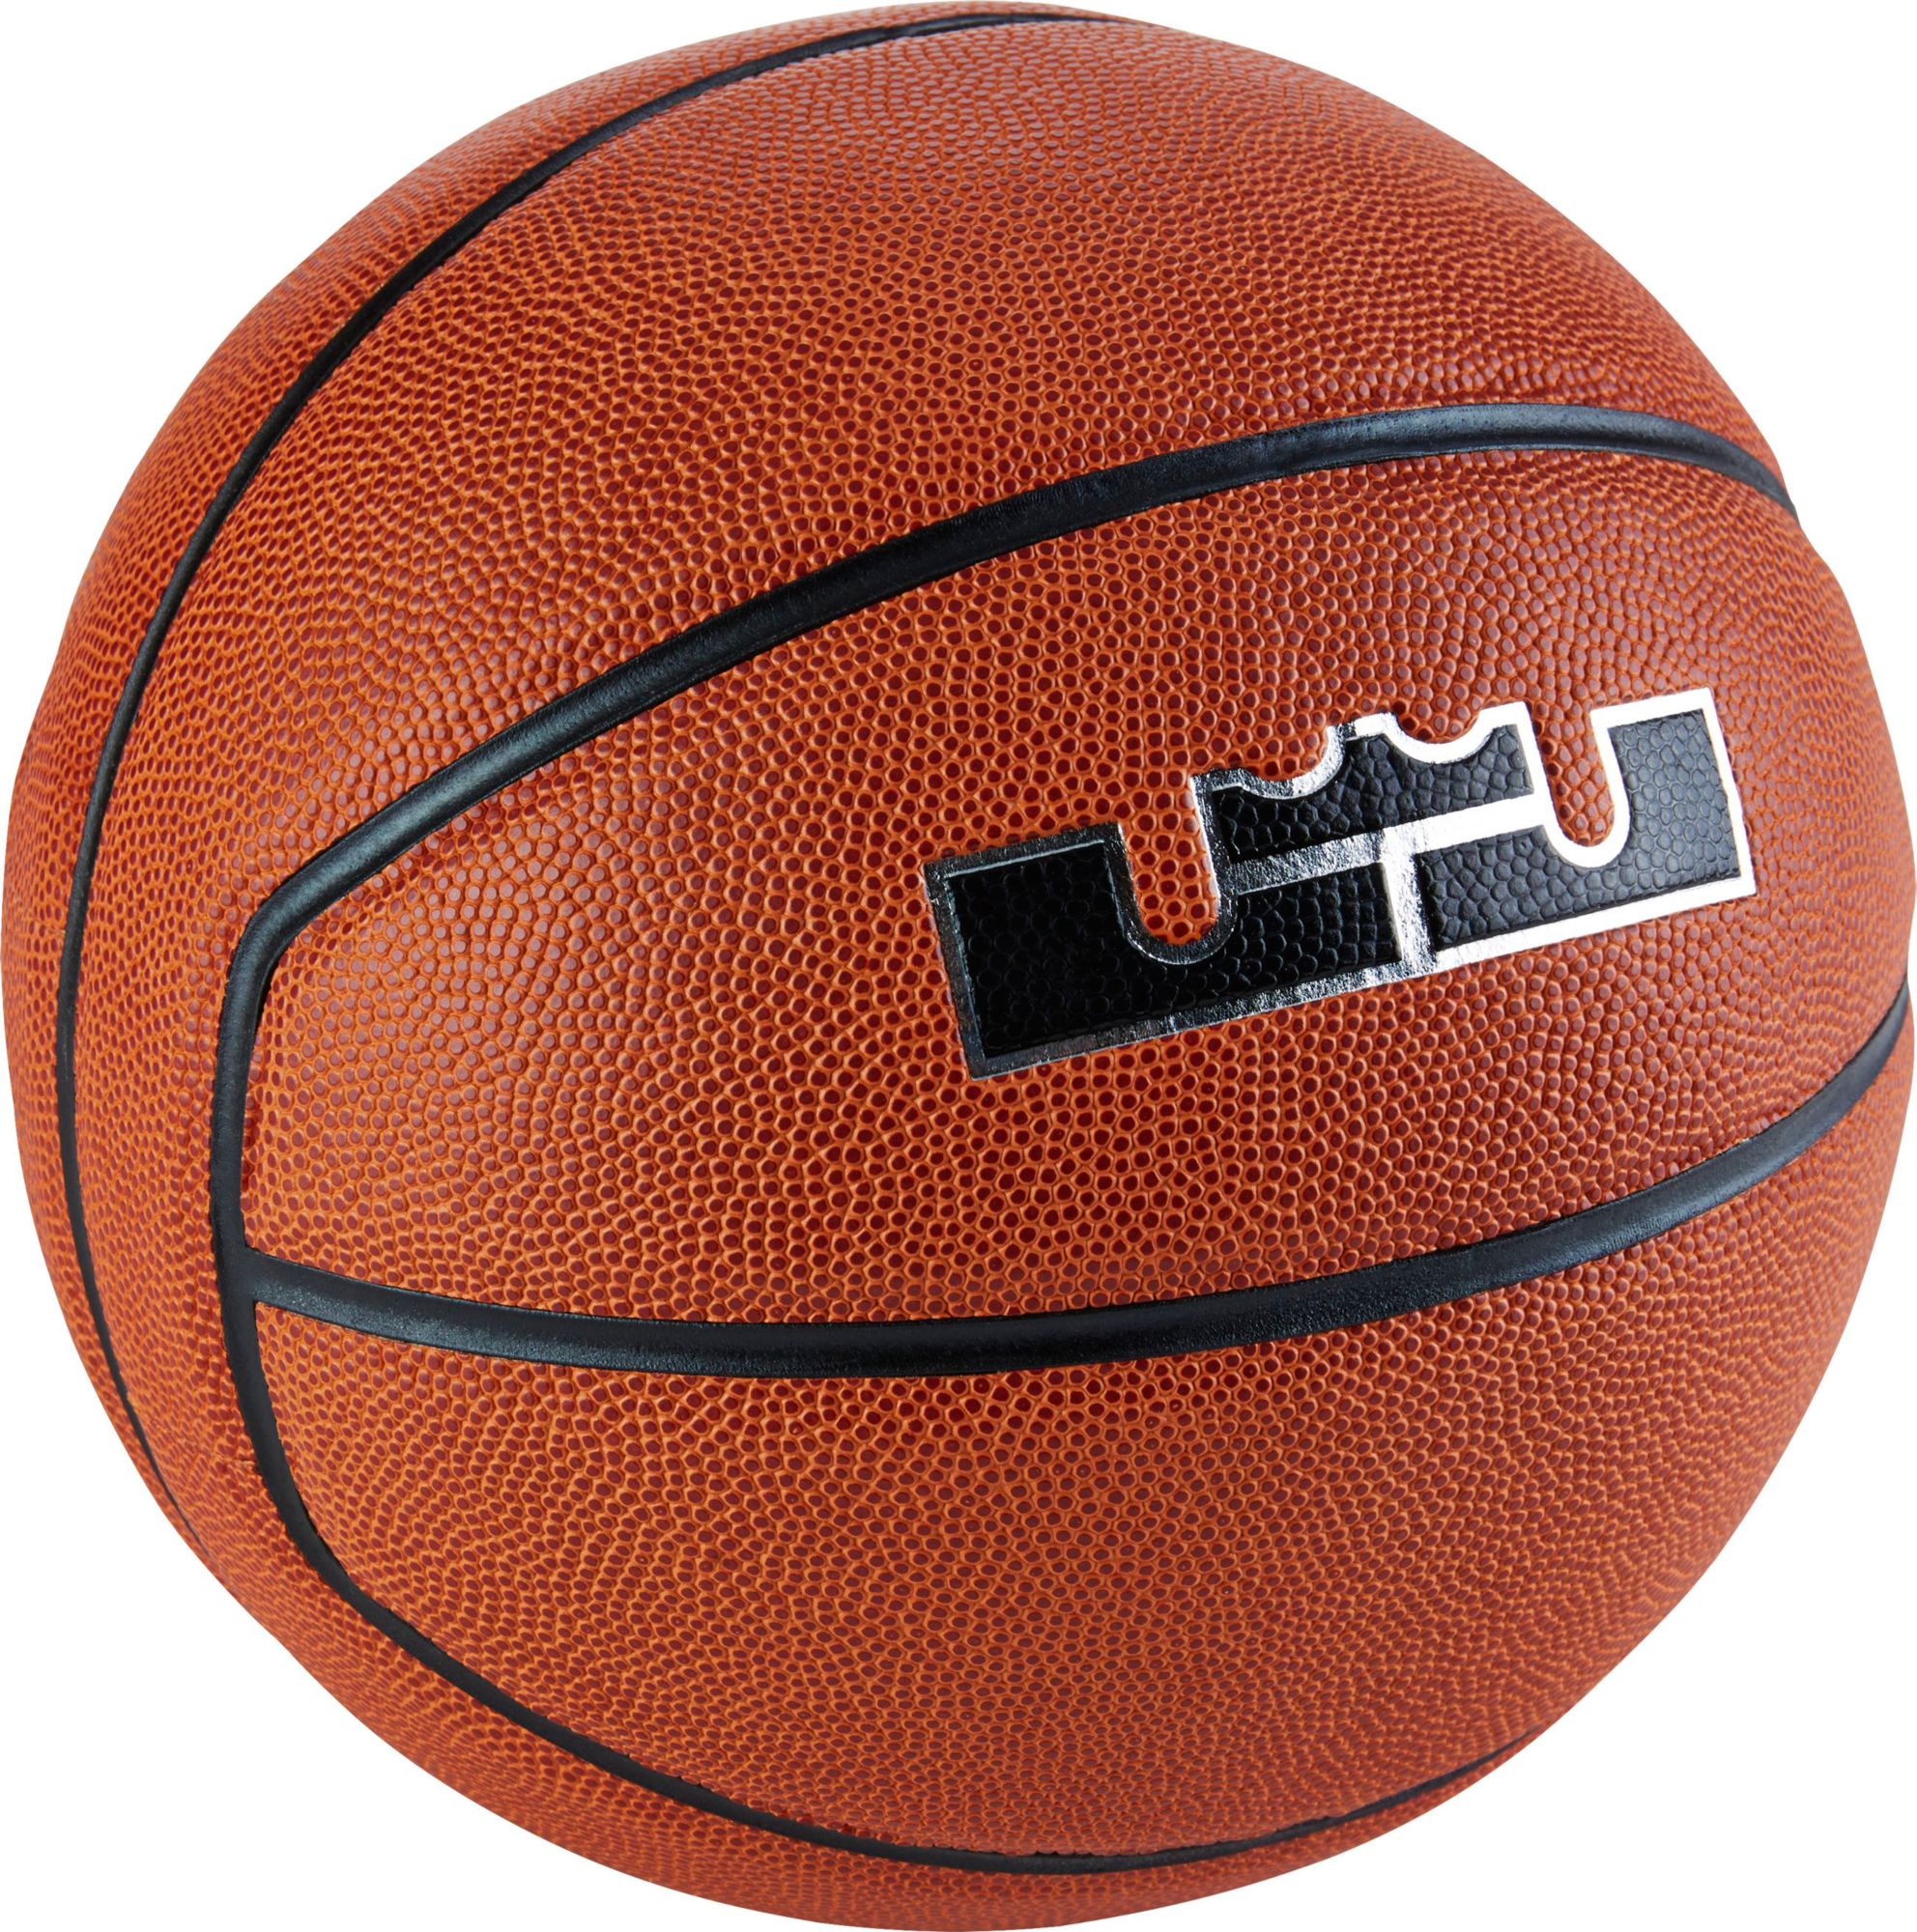 Спортивные магазины баскетбольные мячи. Мячик Леброна Джеймса. Баскетбольный мяч st71206. Vega 3600 мяч баскетбольный. Баскетбольный мяч Peak q102150.